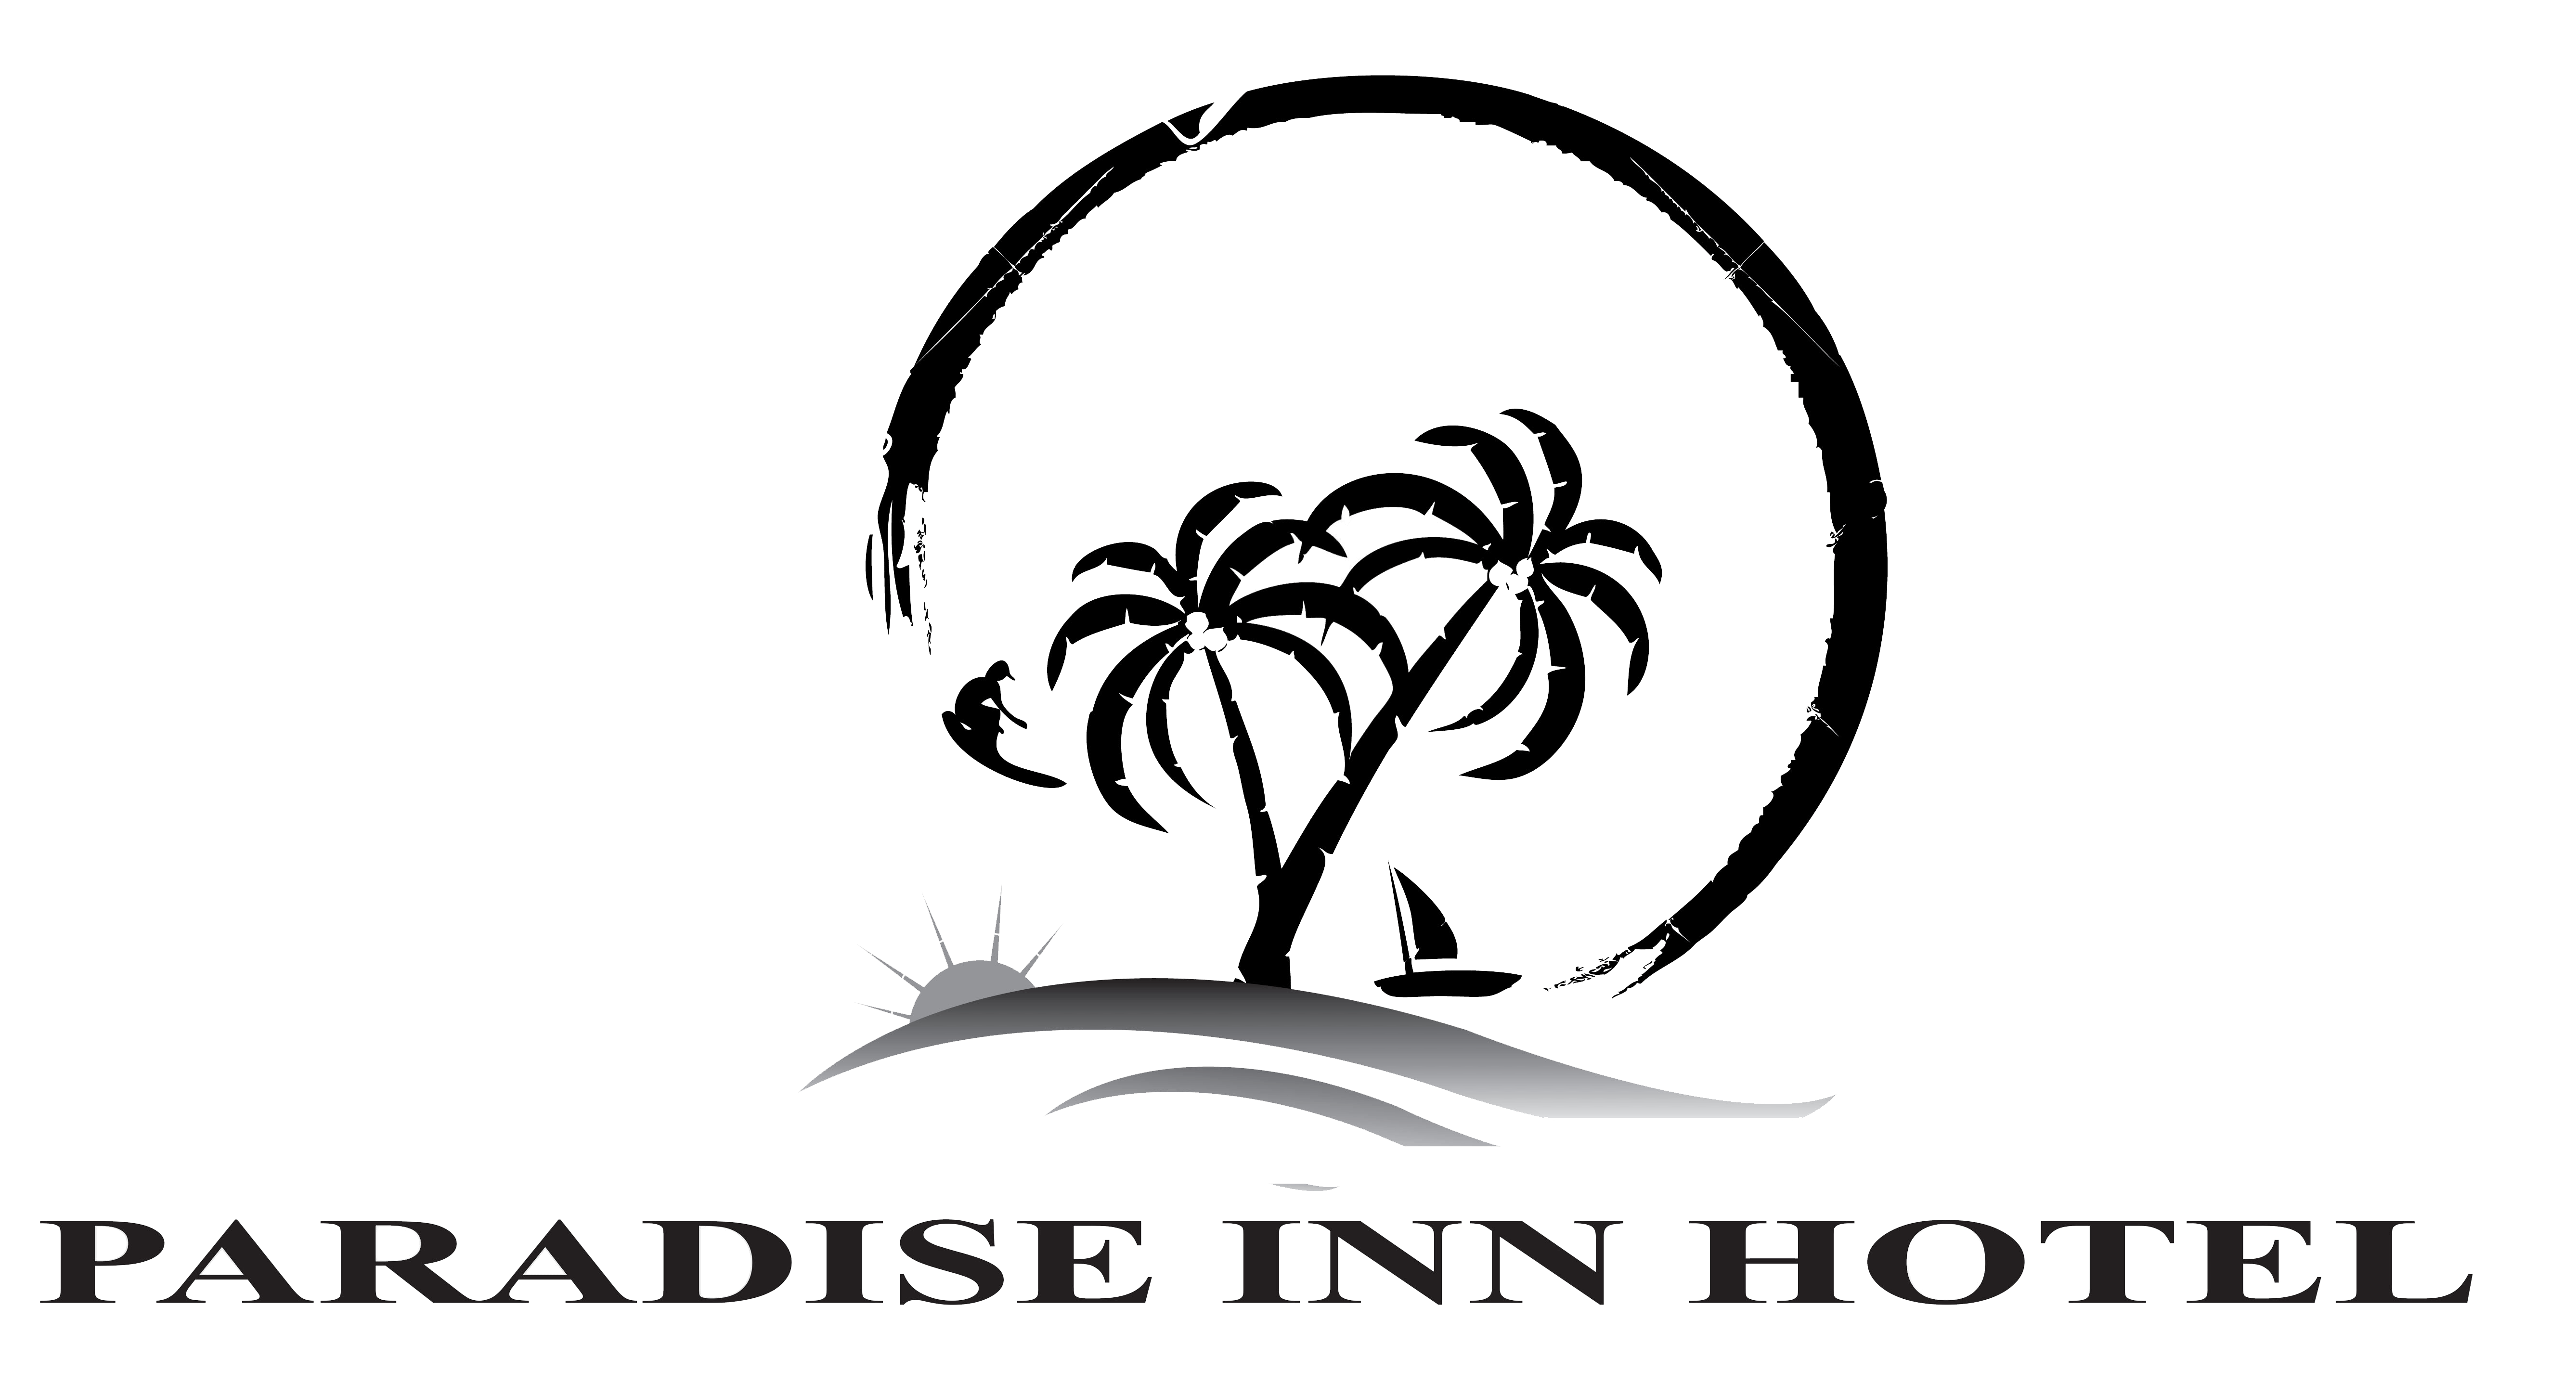 Paradise Hotel Logo - Executive Suites | Paradise Inn Hotel